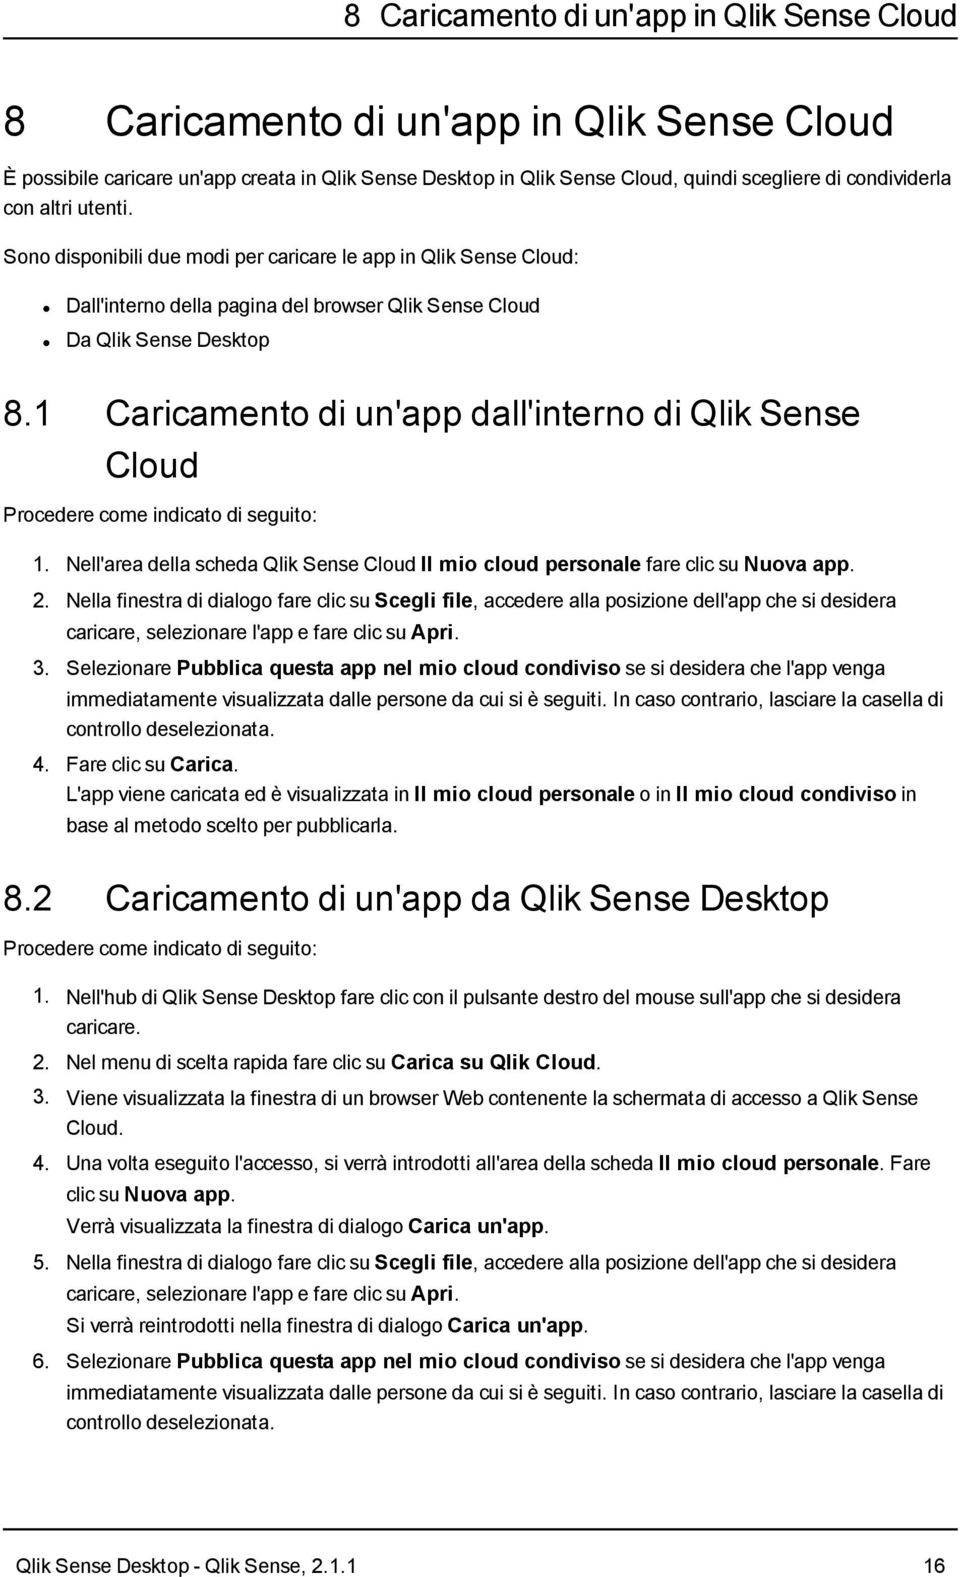 1 Caricamento di un'app dall'interno di Qlik Sense Cloud Procedere come indicato di seguito: 1. Nell'area della scheda Qlik Sense Cloud Il mio cloud personale fare clic su Nuova app. 2.